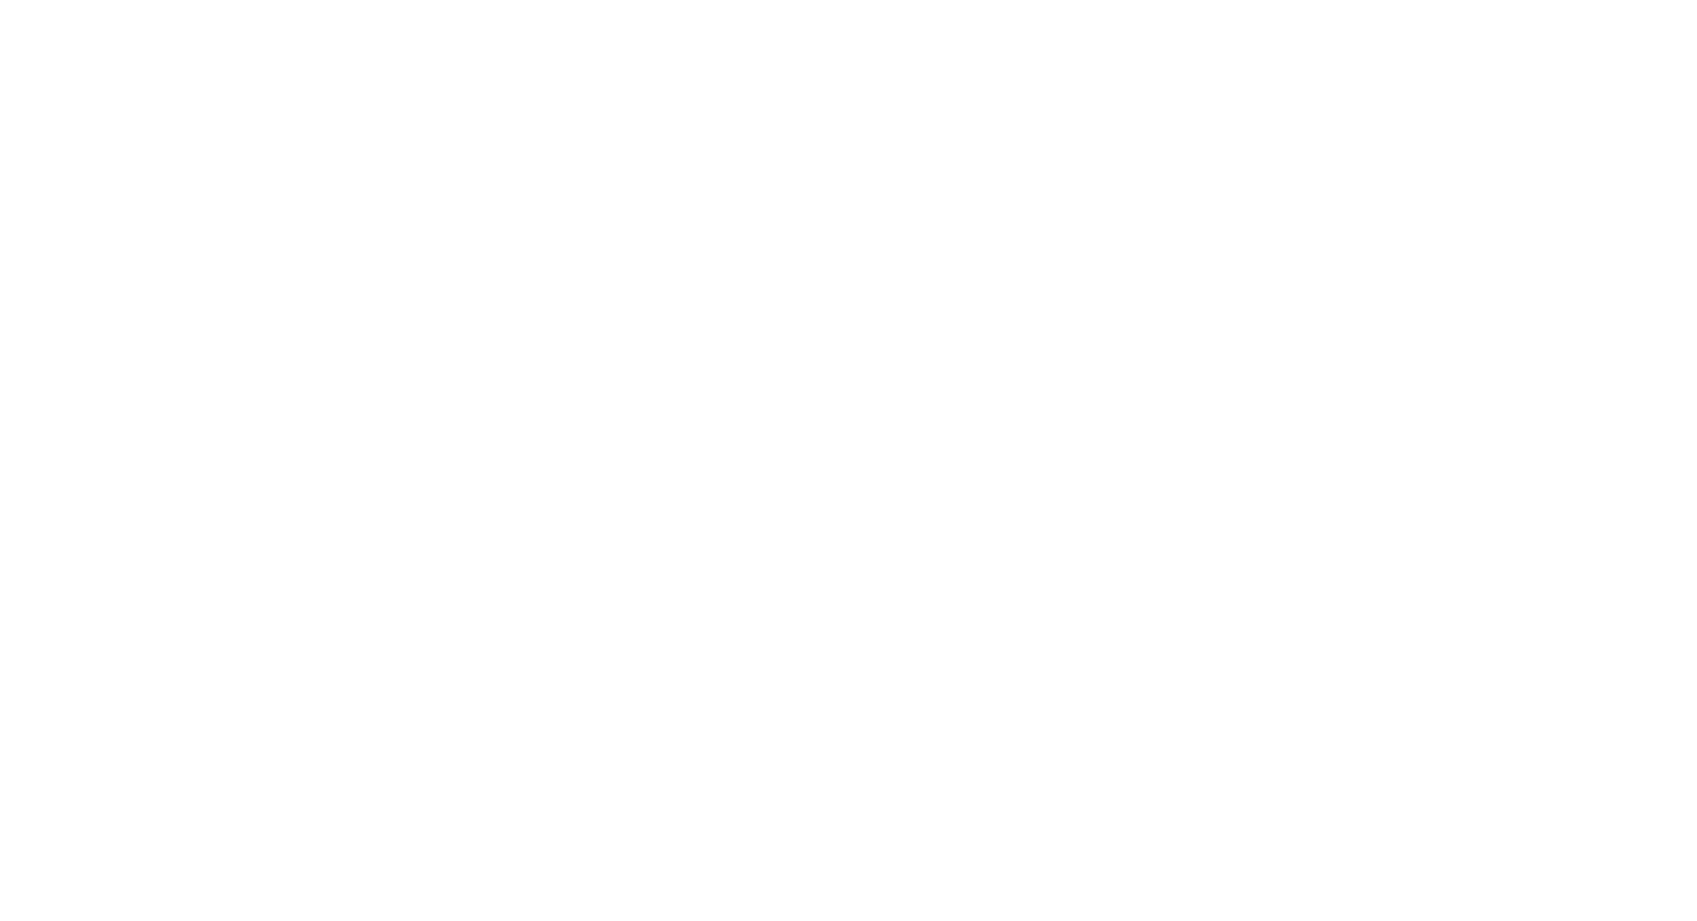 Hong Kong Lower Brass Centre